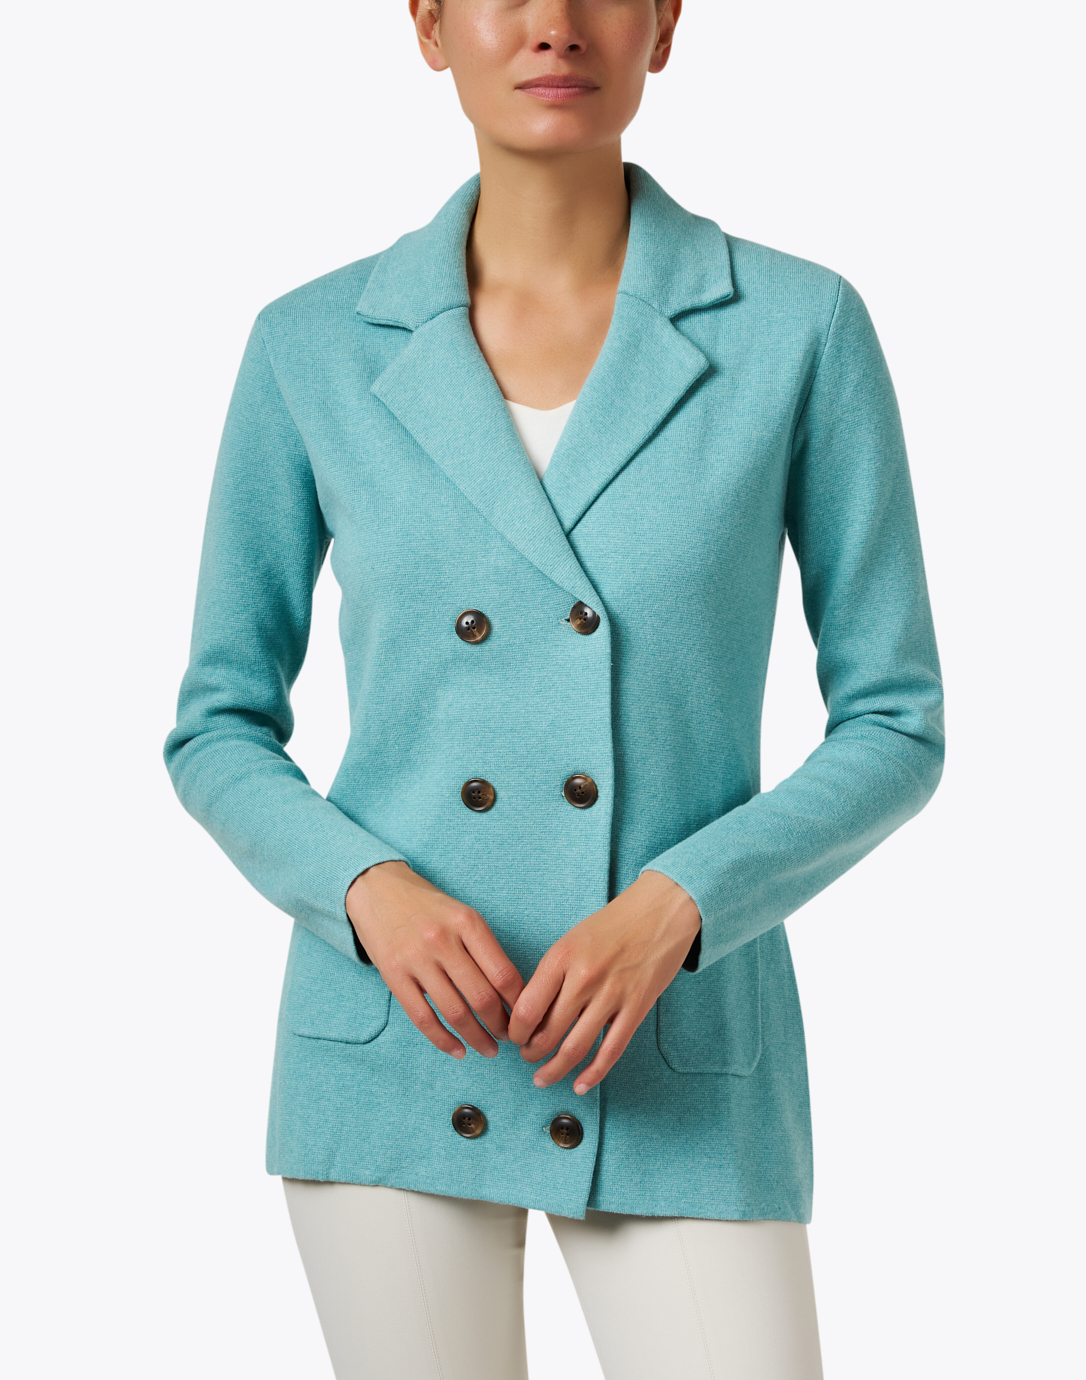 Vertrauen und Qualität an erster Stelle Milan Teal Blue Cotton Burgess Cashmere Coat 